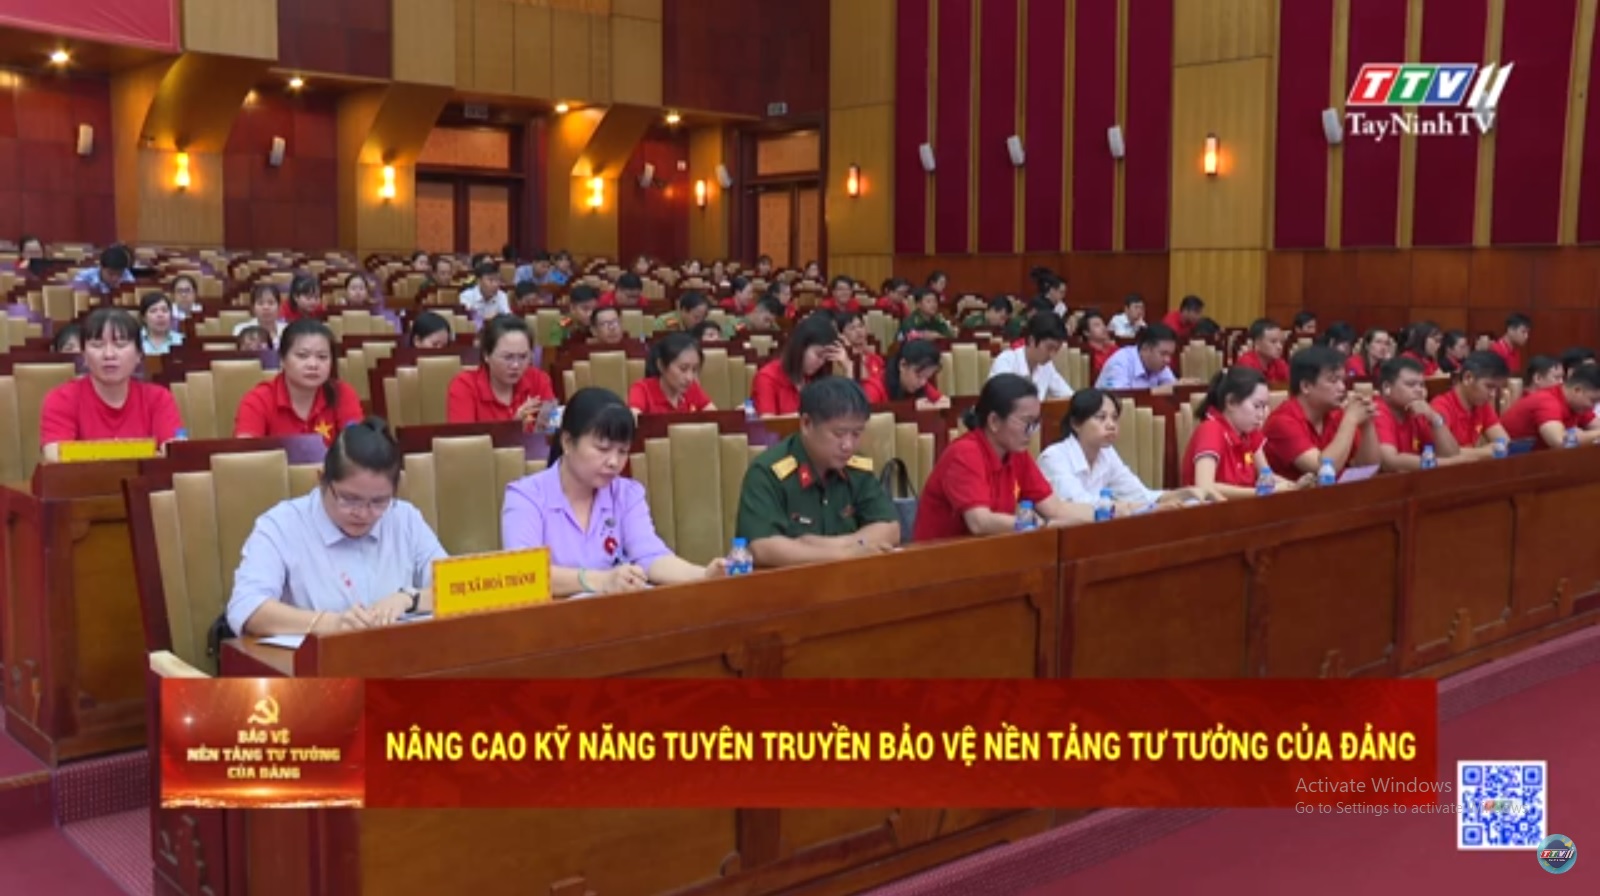 Tiếp tục nâng cao kỹ năng tuyên truyền bảo vệ nền tảng tư tưởng của Đảng | TayNinhTV